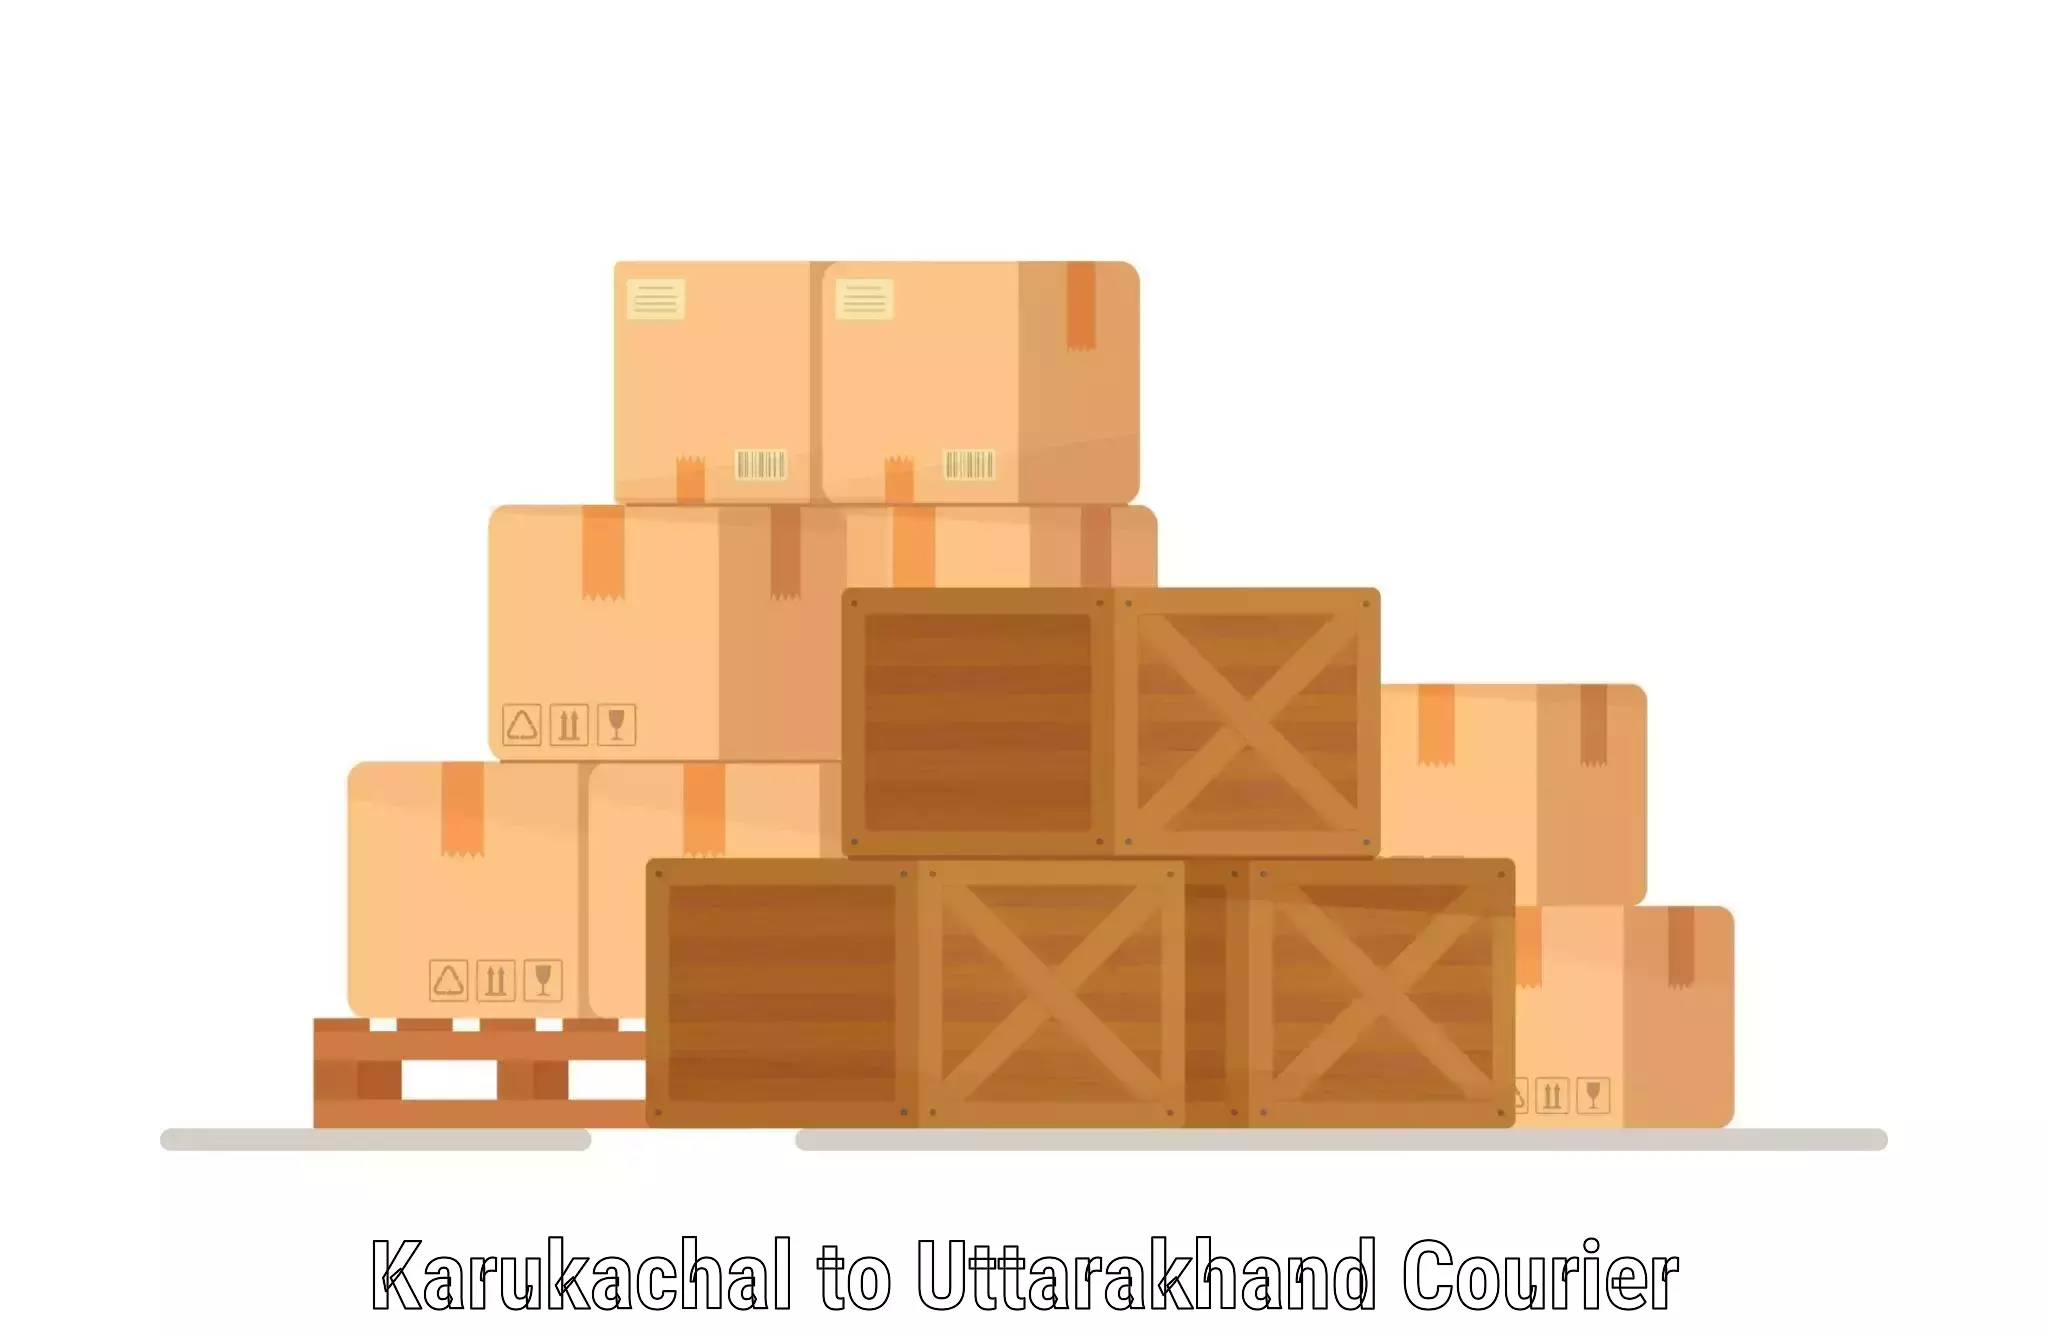 Nationwide courier service Karukachal to Uttarakhand